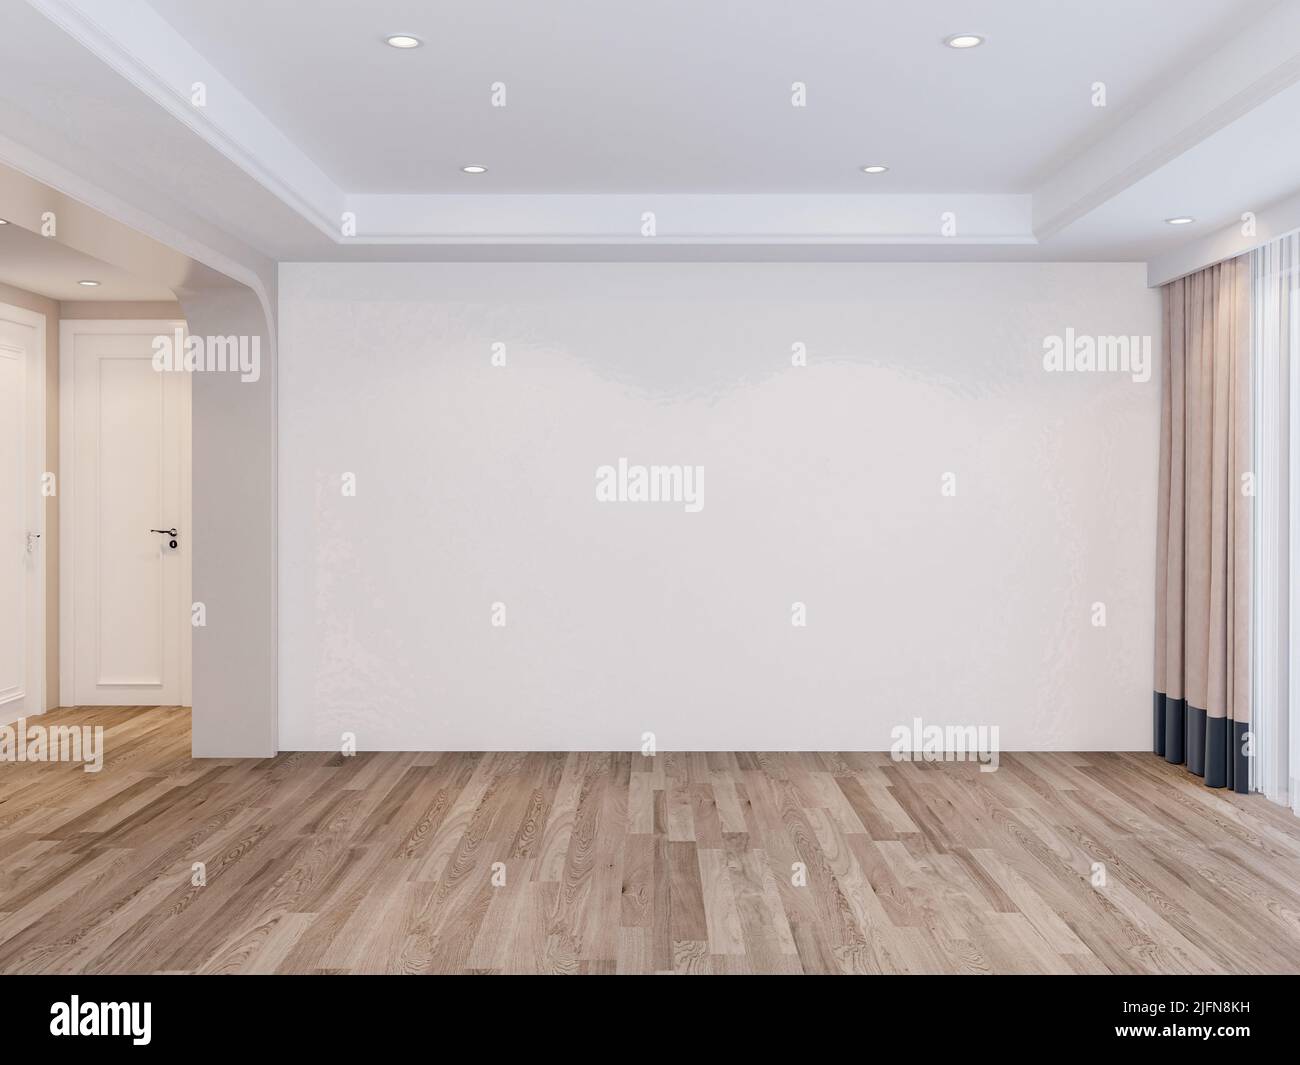 Blanco en blanco habitación interior de fondo de mockup de pared, blanco vacío paredes esquina y suelo de madera blanca contemporánea, 3D renderizado Foto de stock